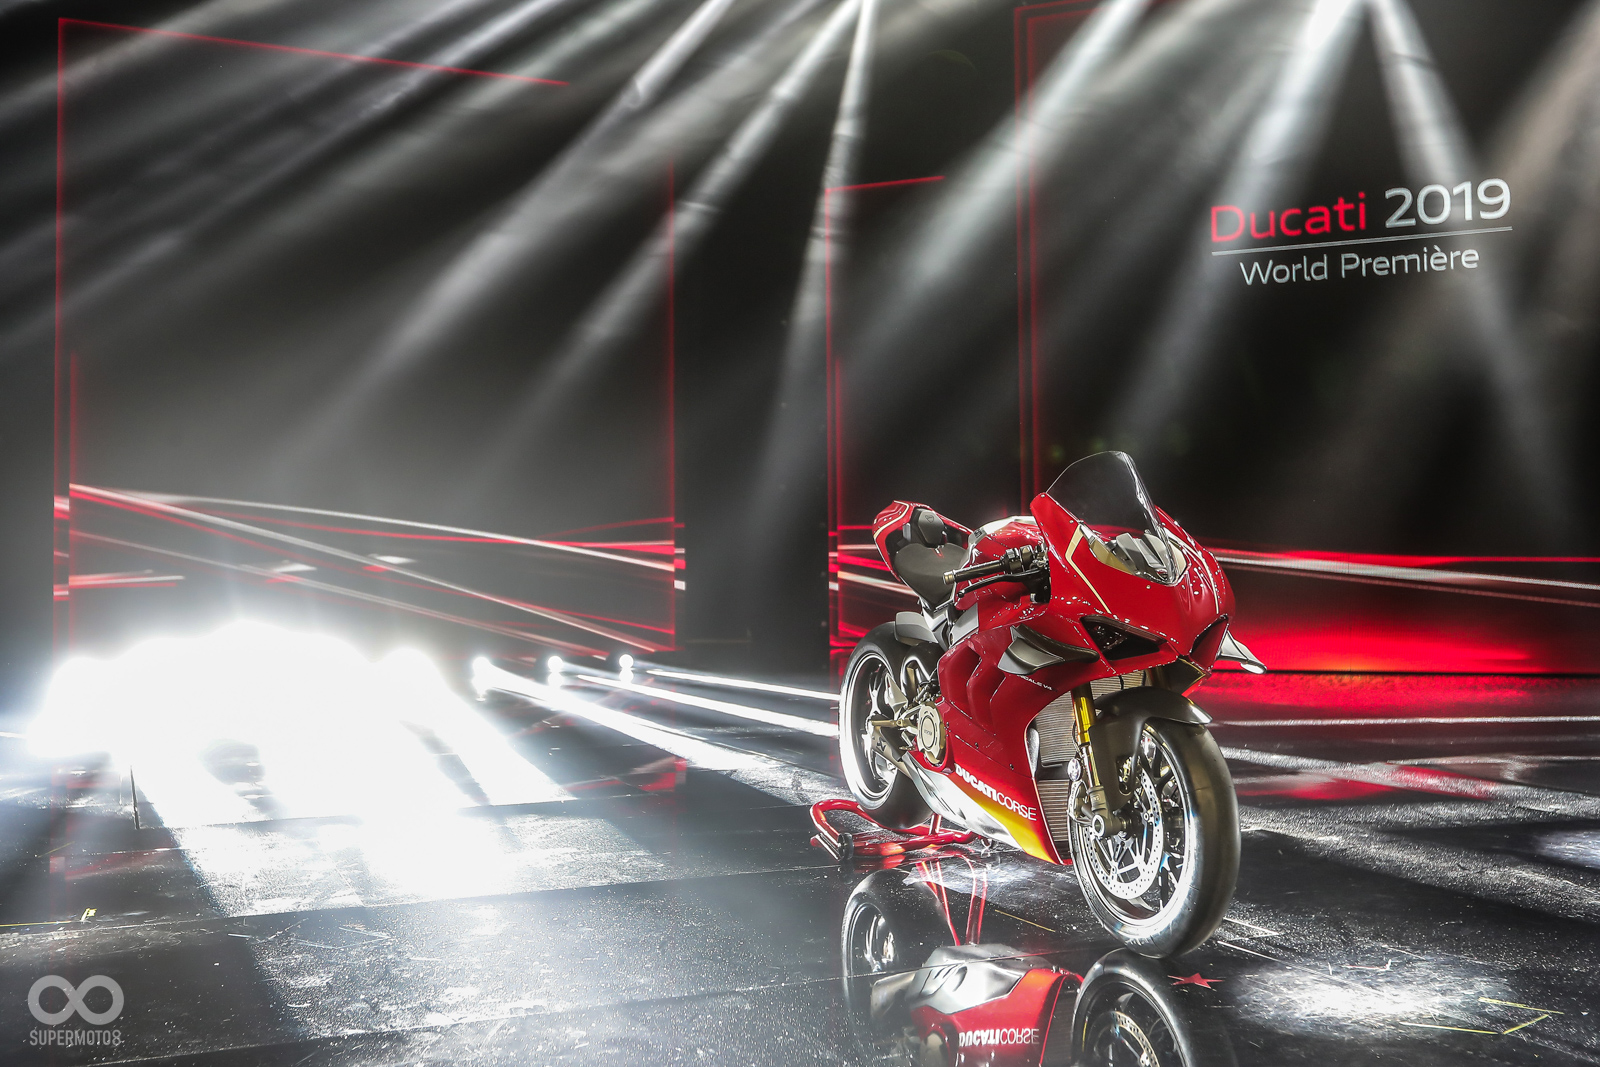 18米蘭車展 小翅膀來襲 Ducati Panigale V4性能雙車系發表 Supermoto8